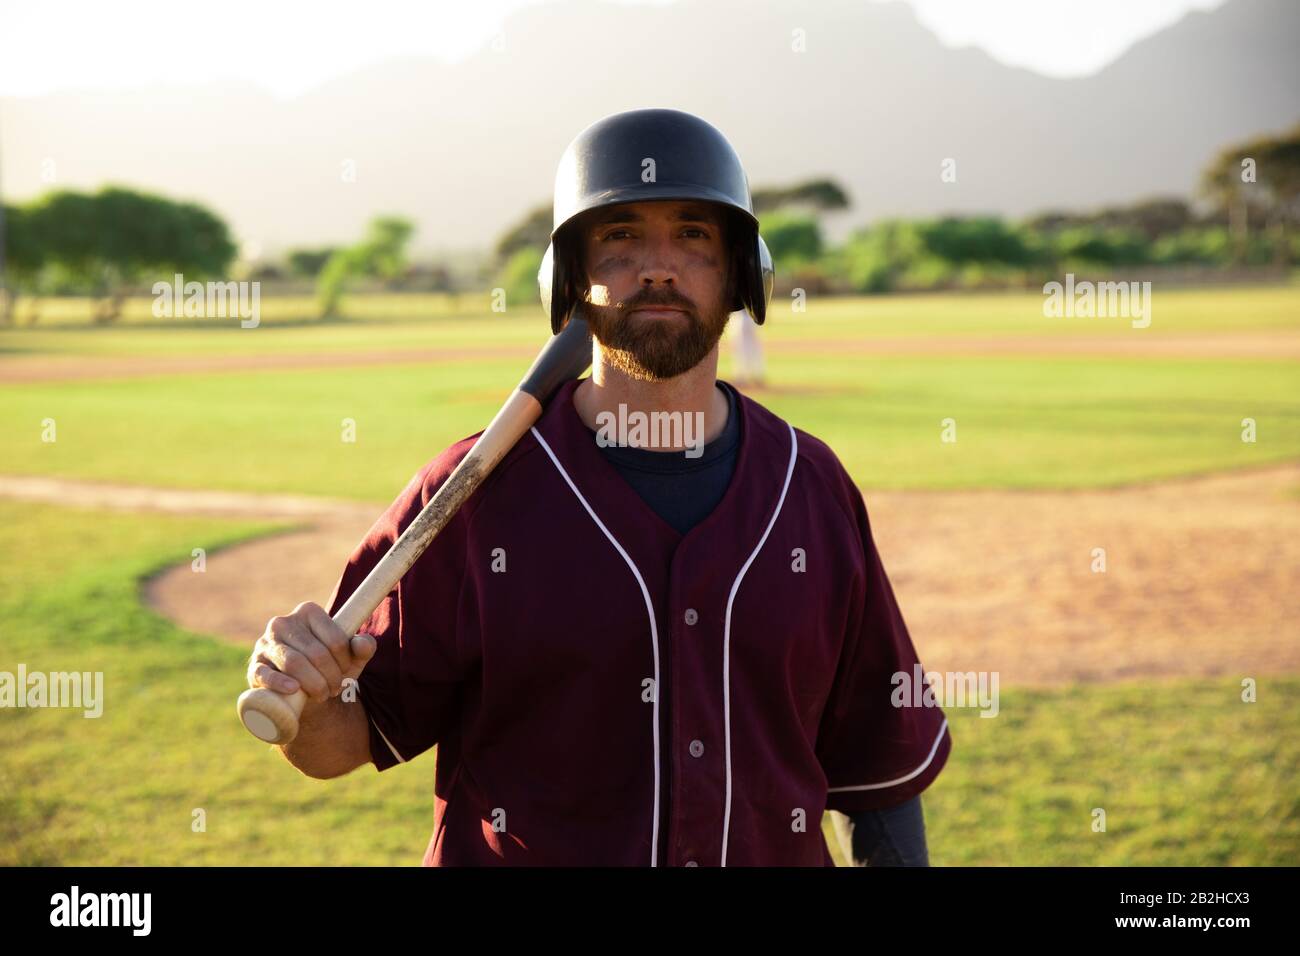 Joueur de base-ball regardant la caméra tenant une batte de base-ball et un casque Banque D'Images